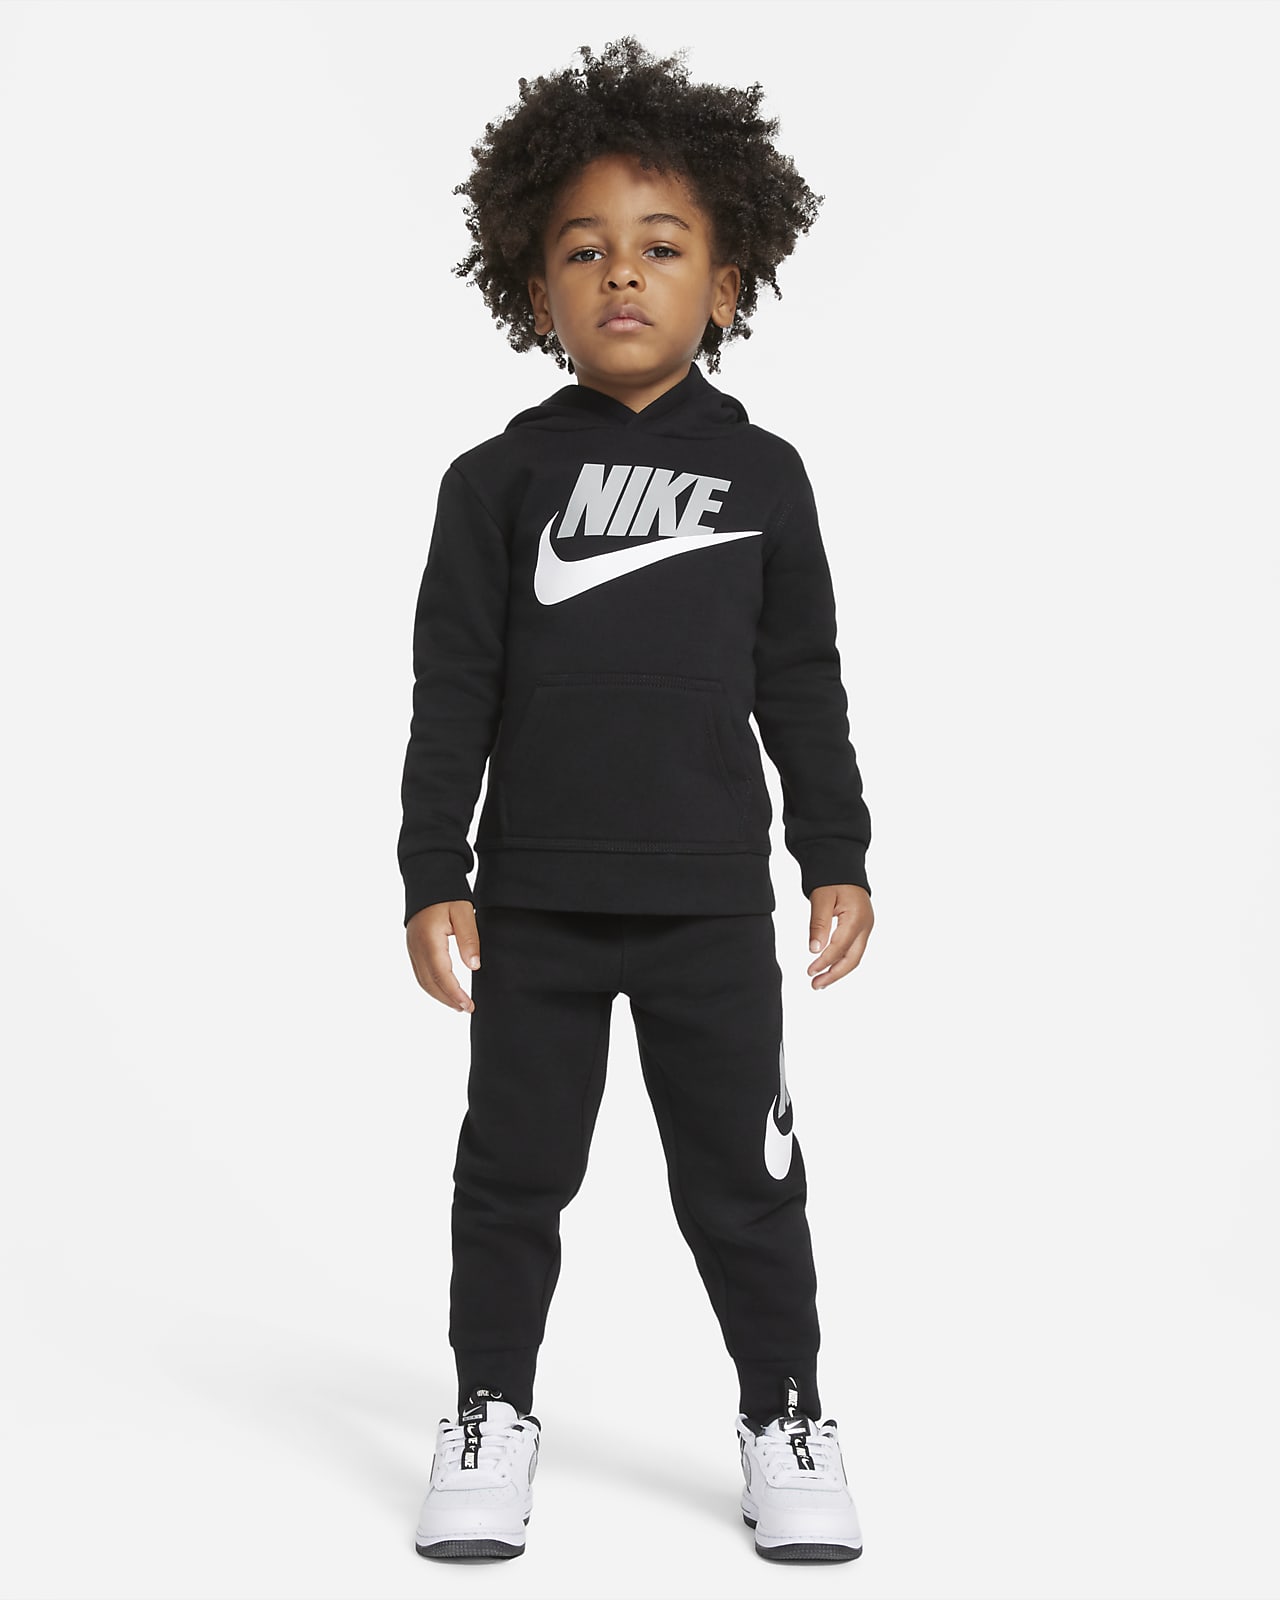  Survetement Nike Enfant